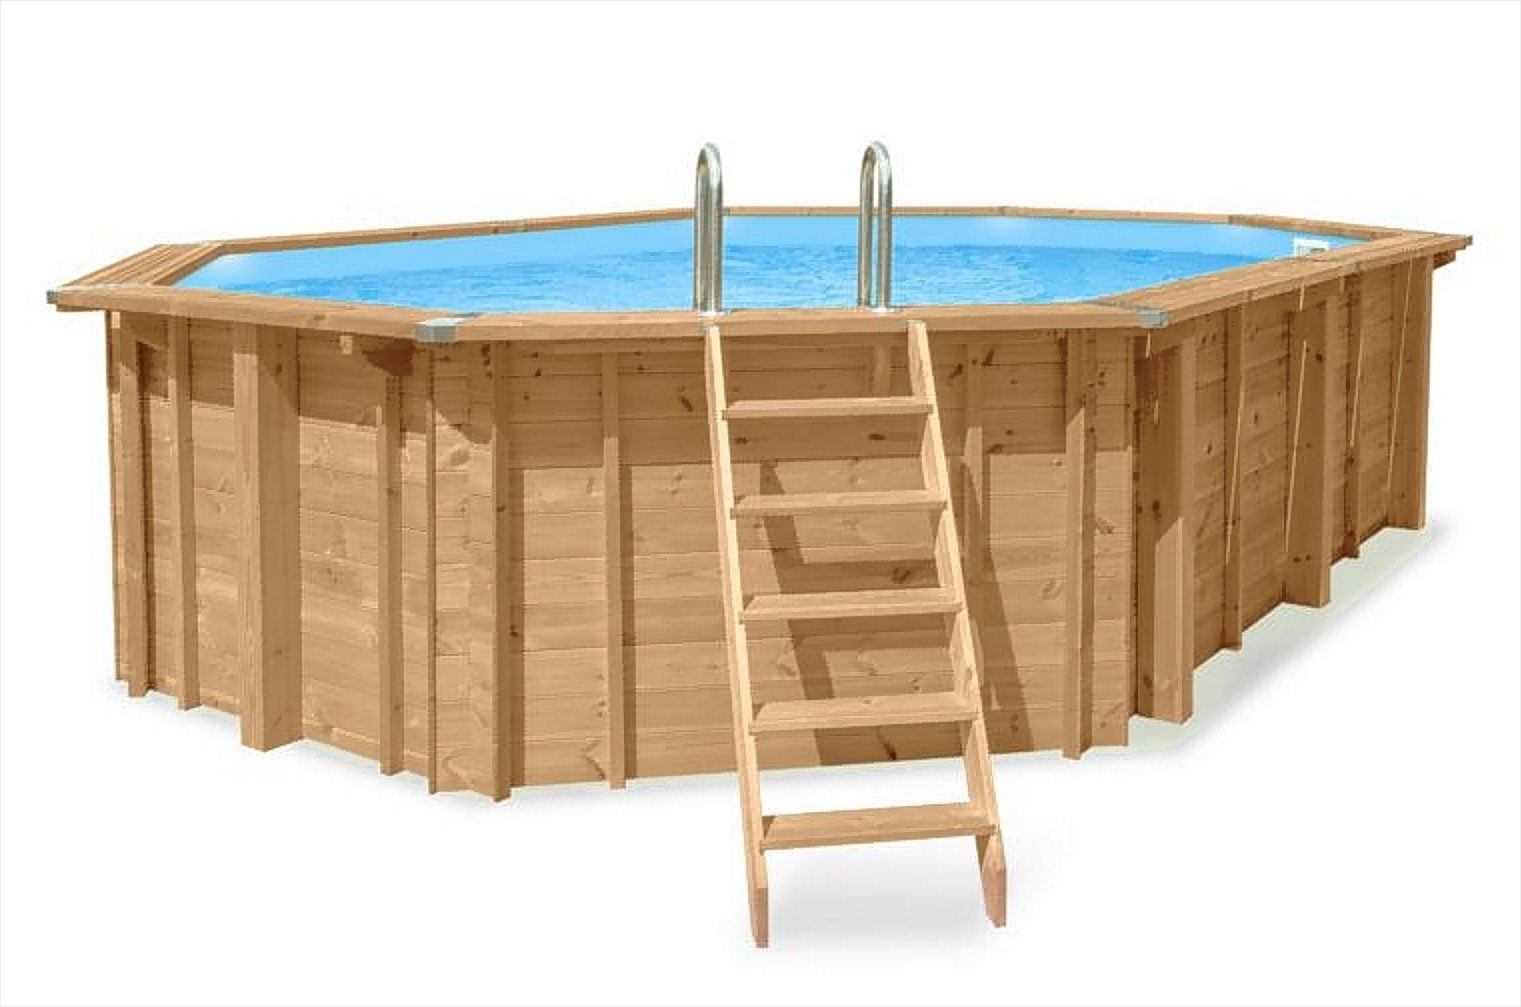 Piscine en bois Sunnydream 07, ovale, 8,40 x 4,90 mètres, avec système de filtration Premium, média filtrant, échelle de piscine, liner de piscine, voile de fond et voile de paroi, raccords d'angle en acier inoxydable